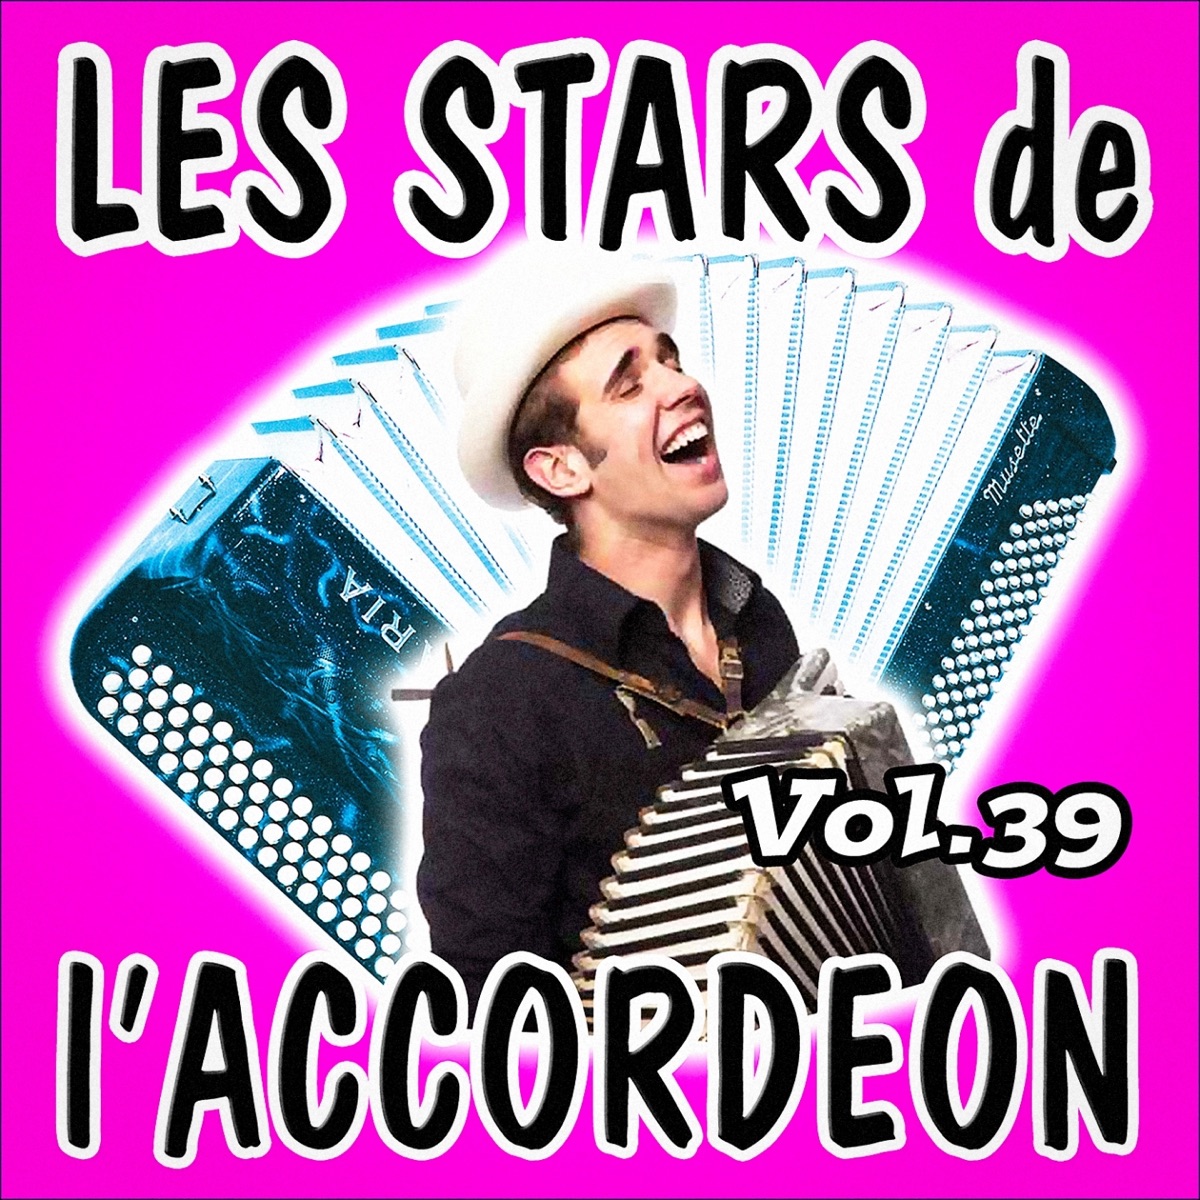 Les stars de l'accordéon, vol. 39 - Album by Various Artists - Apple Music